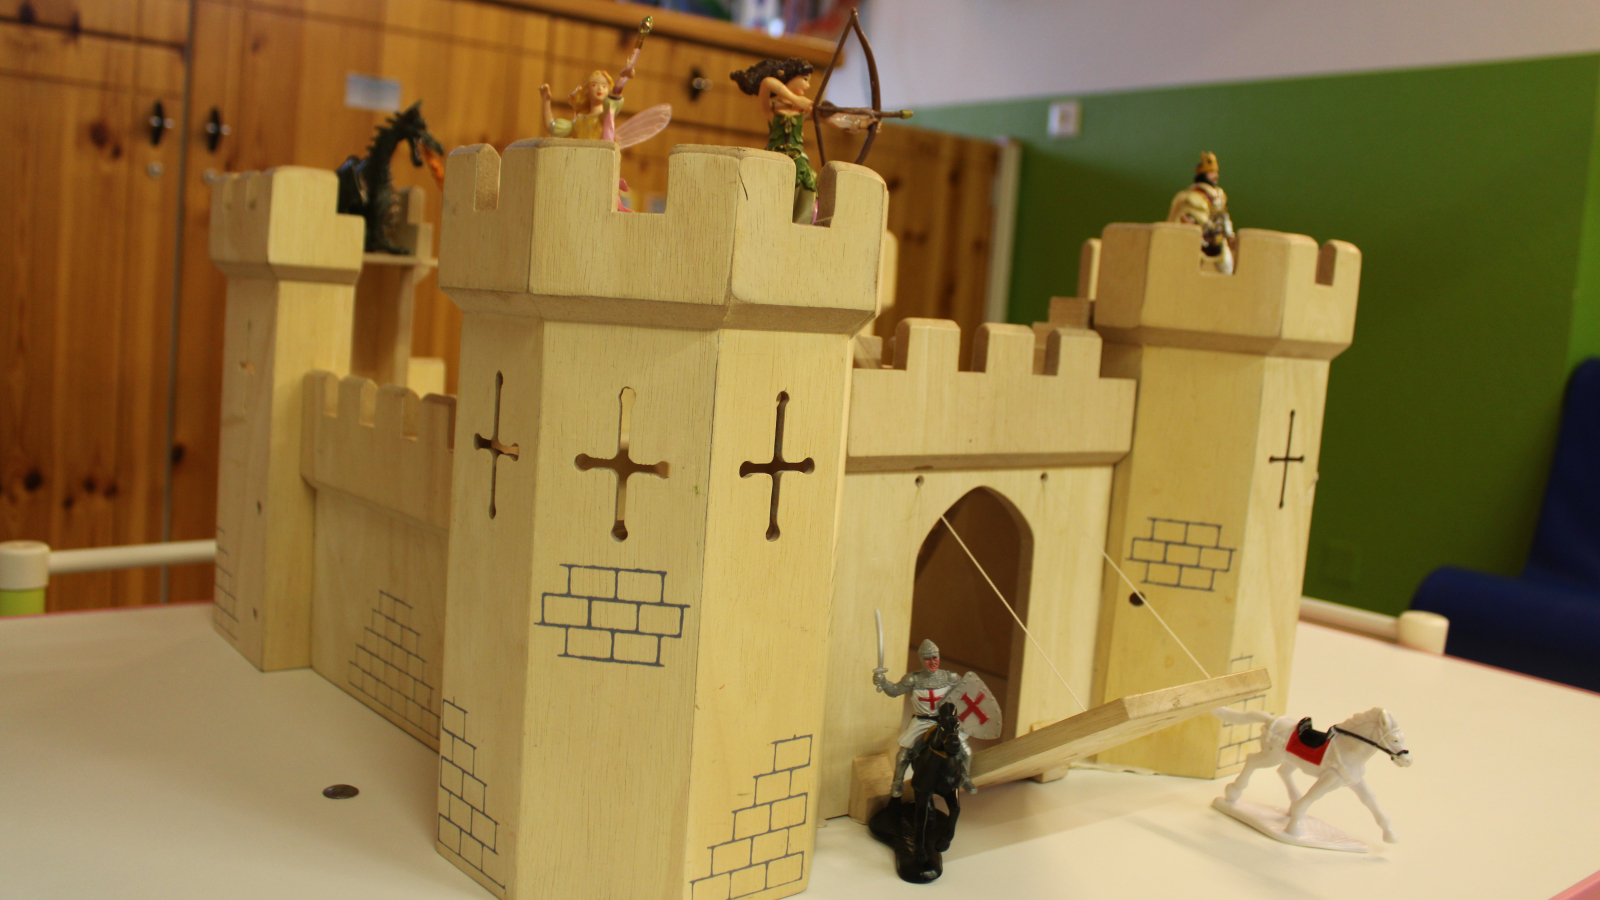 Construction chateau-fort avec des figurines de chevaliers, fées, chevaux.